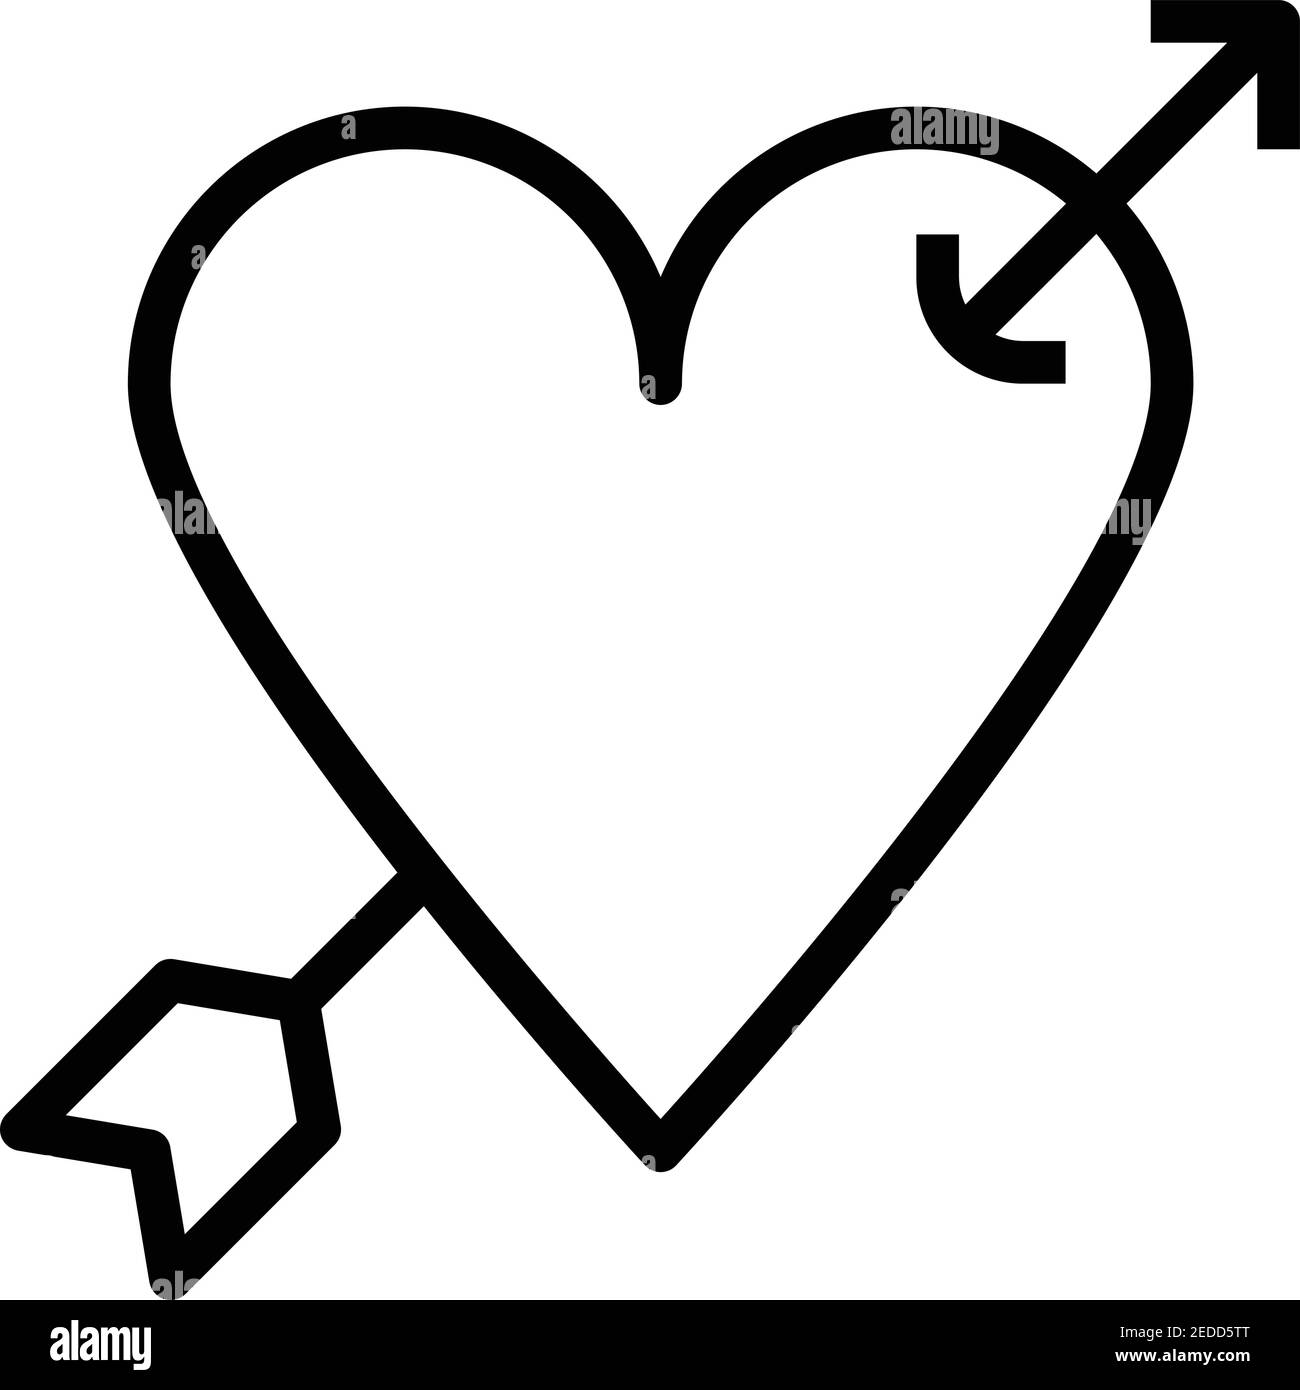 Corazón y flecha Imágenes de stock en blanco y negro - Página 2 - Alamy